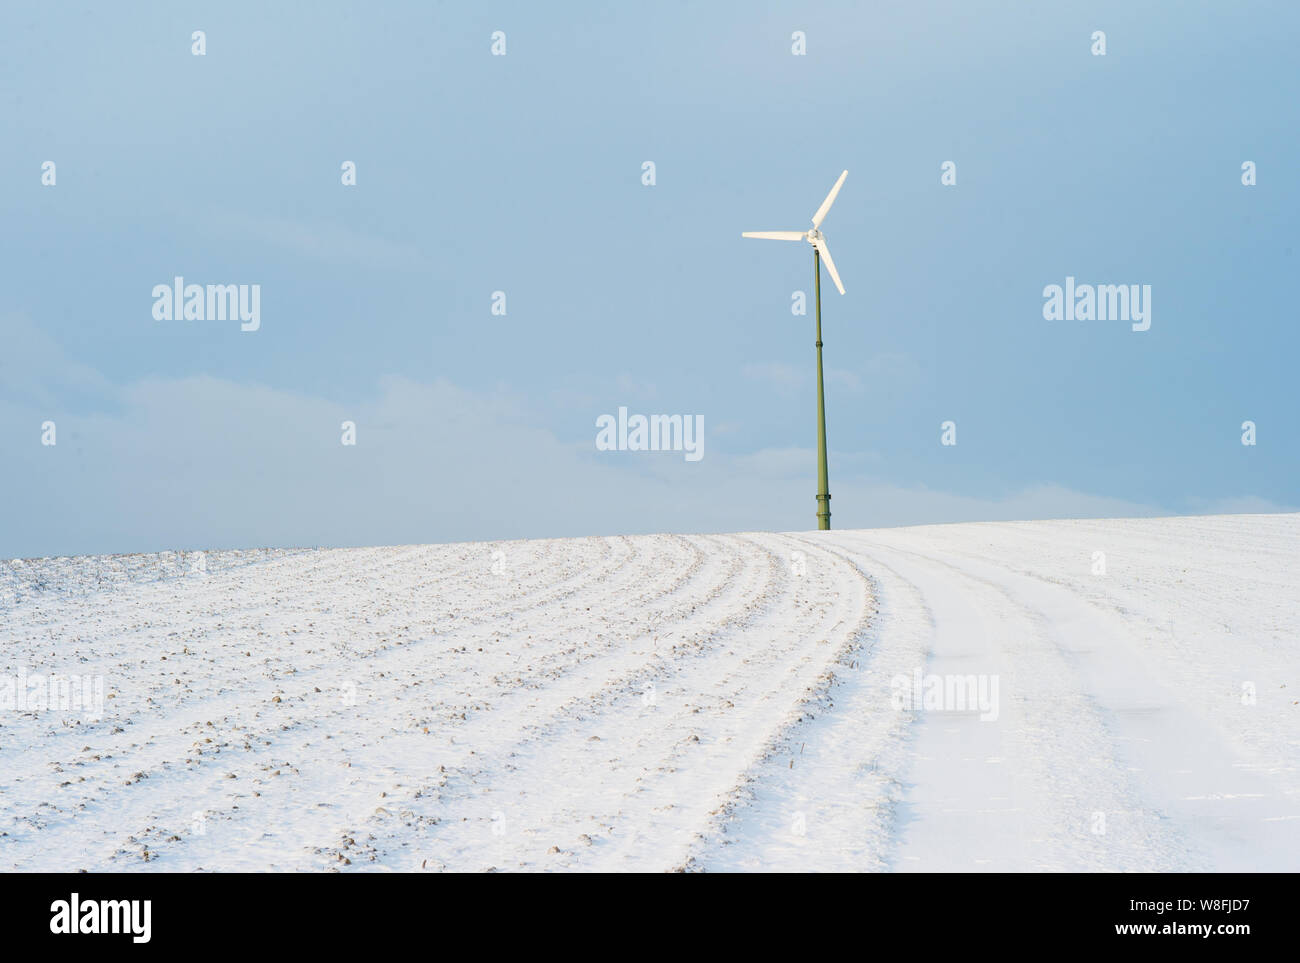 Electric usine éolienne sur une colline couverte de neige - un concept pour l'énergie renouvelable Banque D'Images